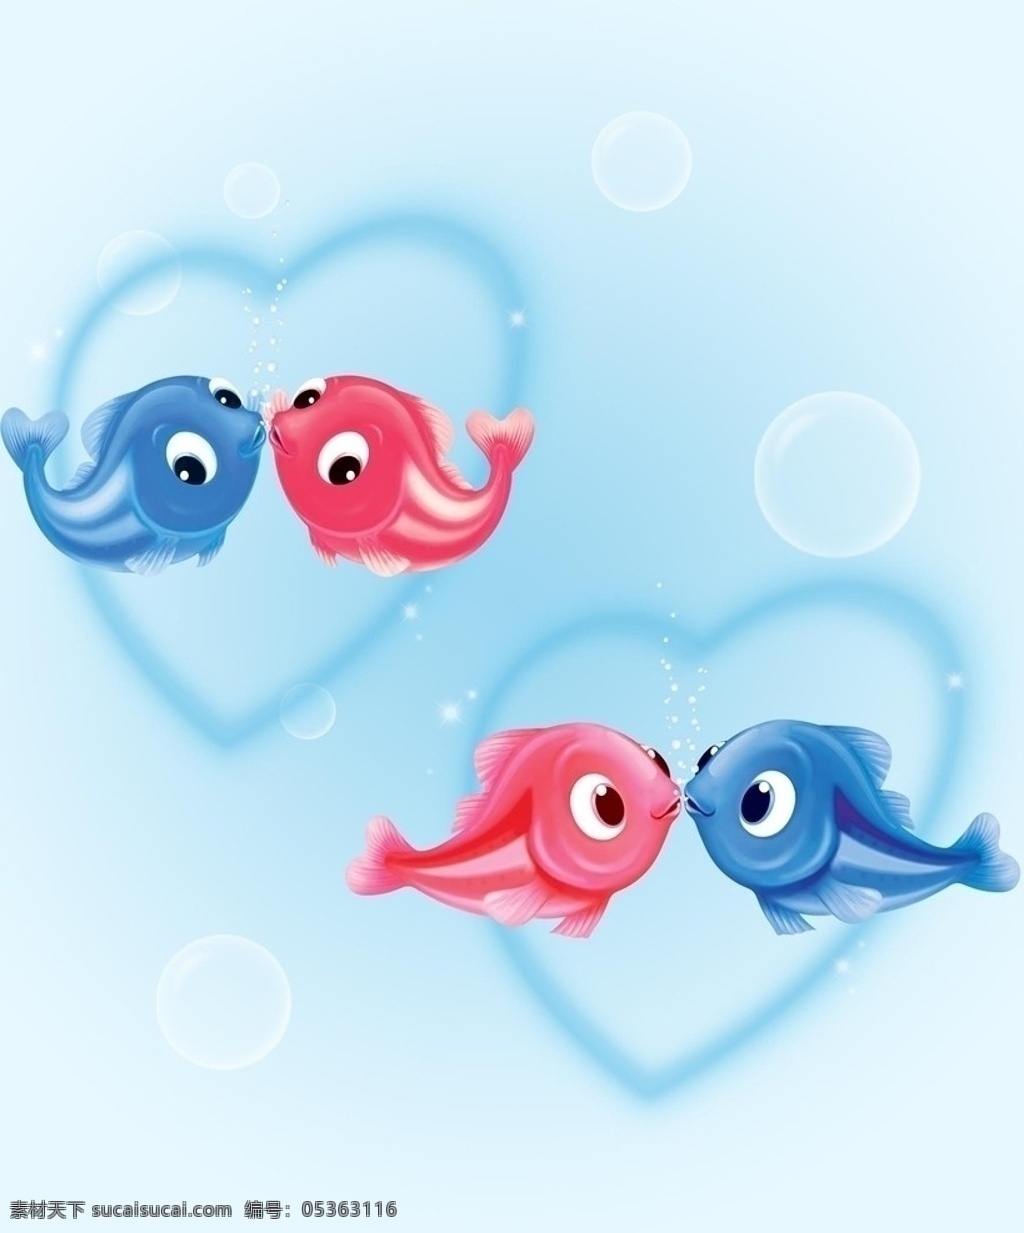 动漫动画 动漫风景 卡通动物 卡通画 卡通风景 蓝色背景 气泡 大海 海洋生物 色彩斑斓 鱼 亲亲鱼 接吻鱼 风景漫画